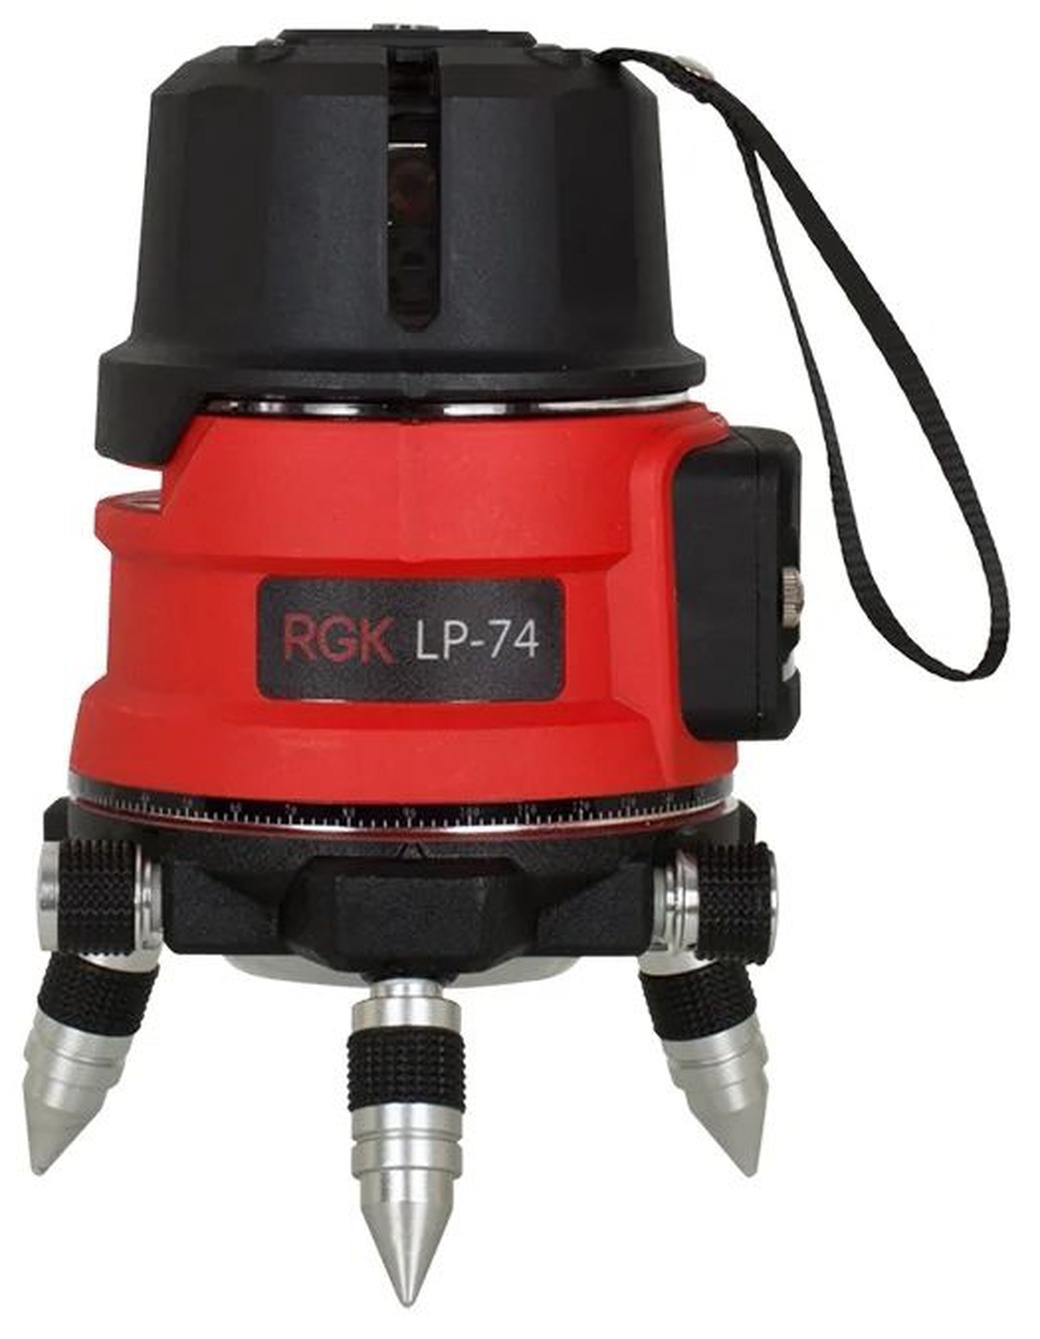 Уровень RGK LP-74 лазерный построитель плоскостей фото